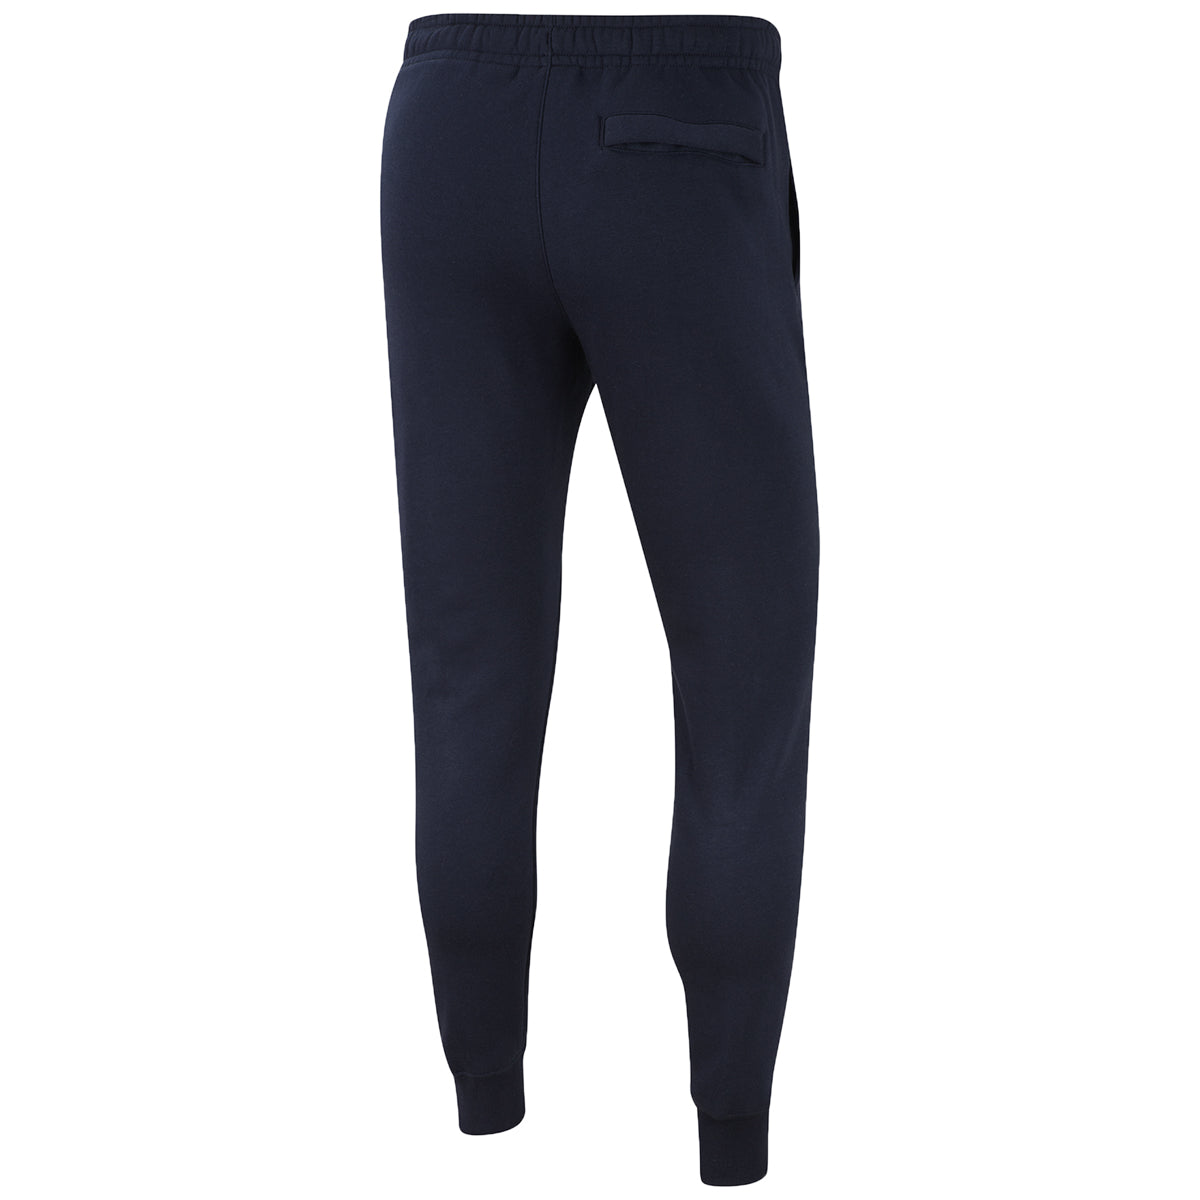 Nike Sportswear Jdi Fleece Pants Mens Style : Bv5114